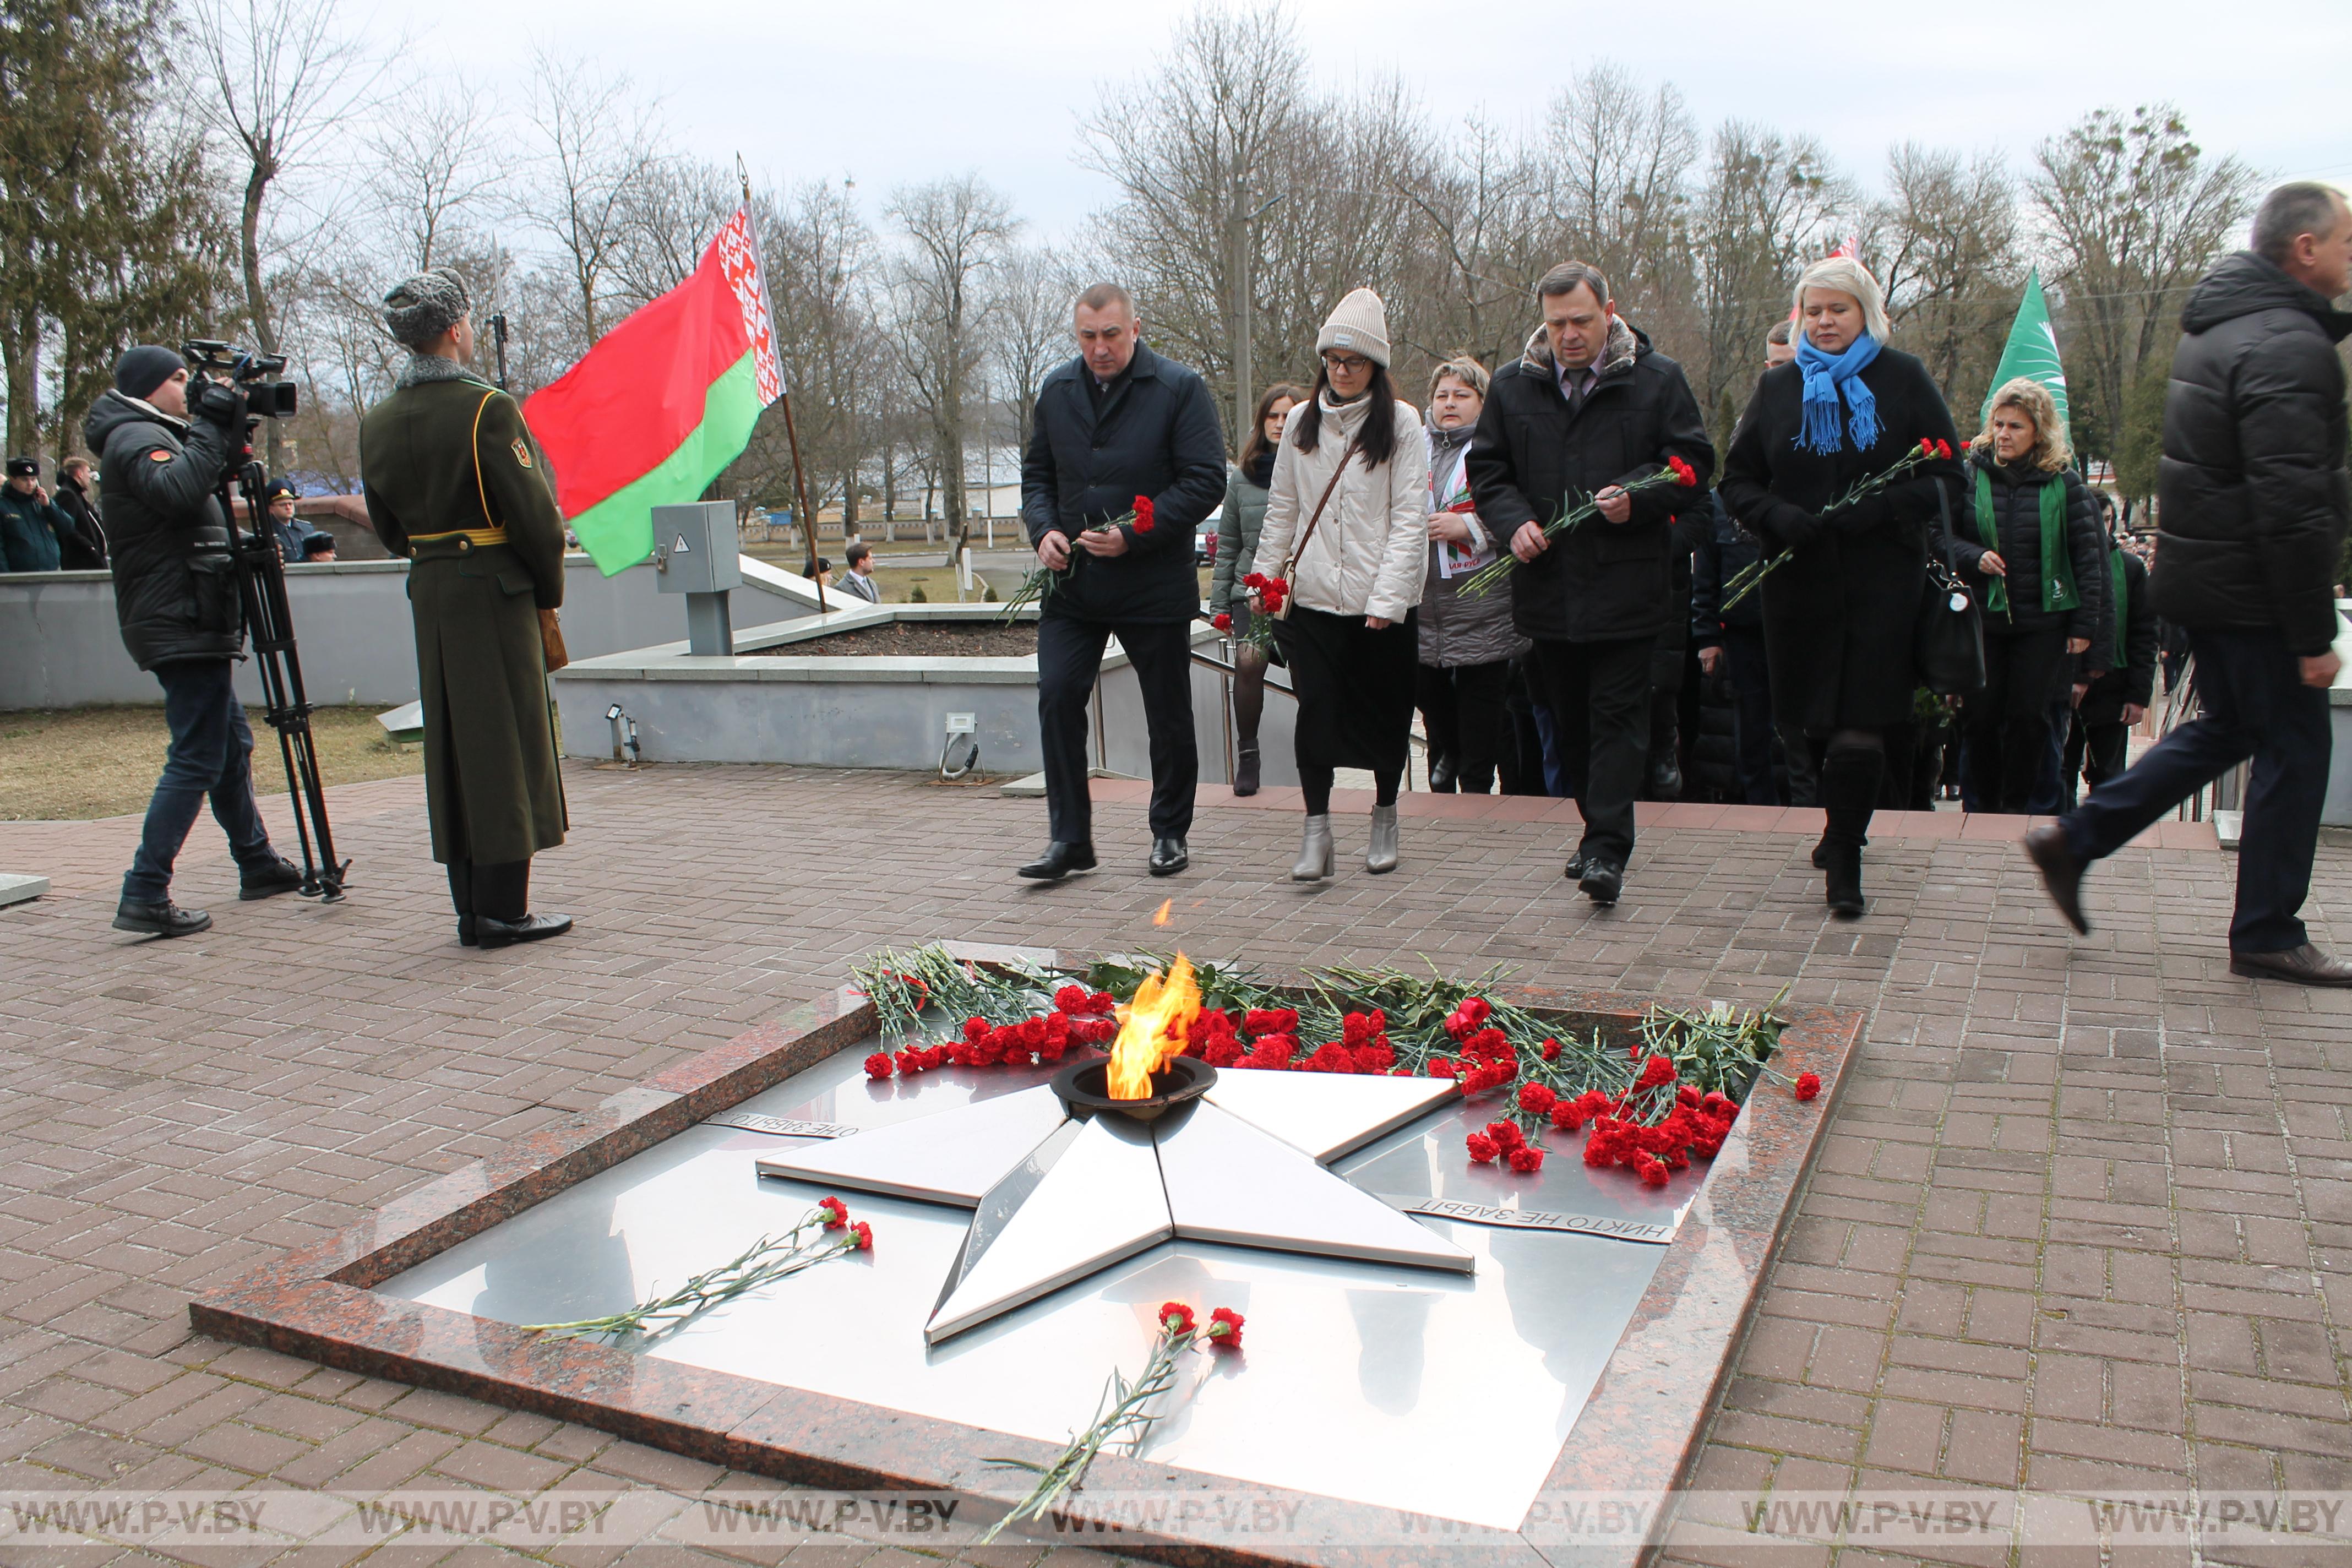 В Пинске состоялся митинг, посвящённый Дню защитников Отечества и Вооруженных Сил Республики Беларусь